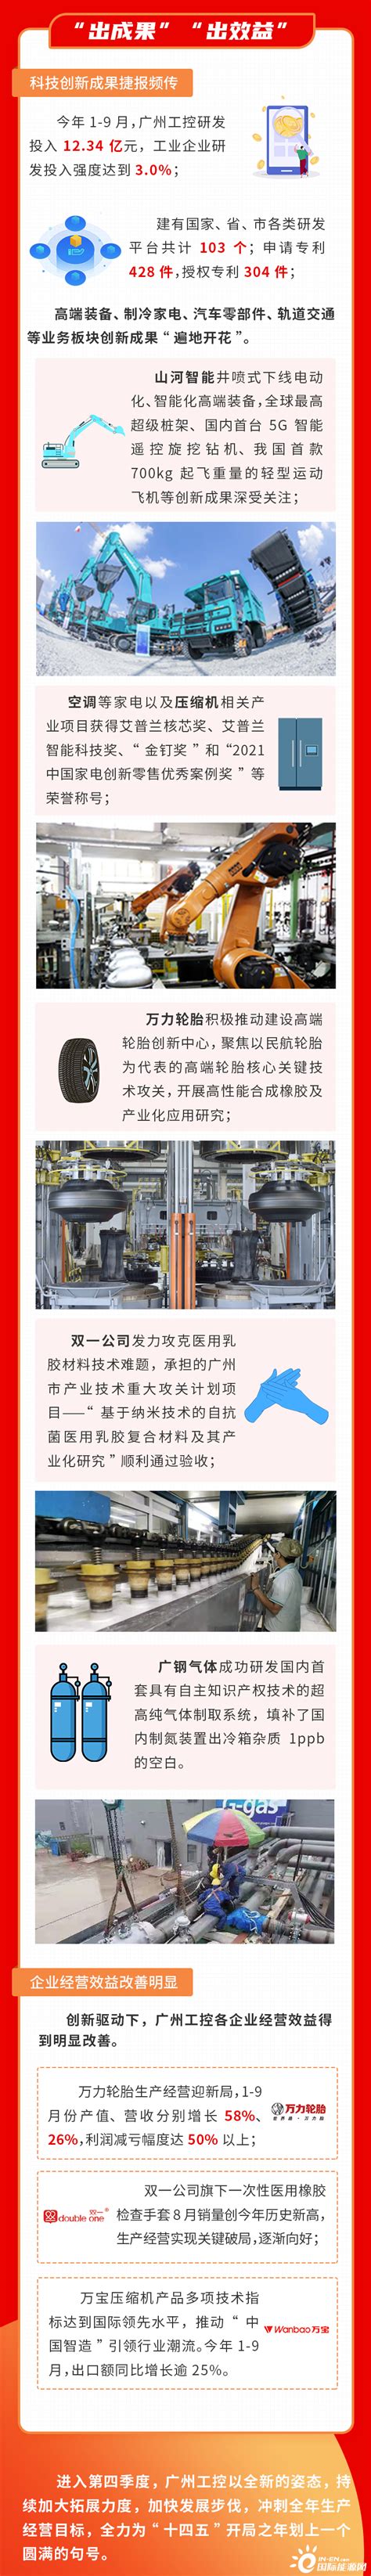 广州工控签约千亿级产业园项目 - 轮胎世界网